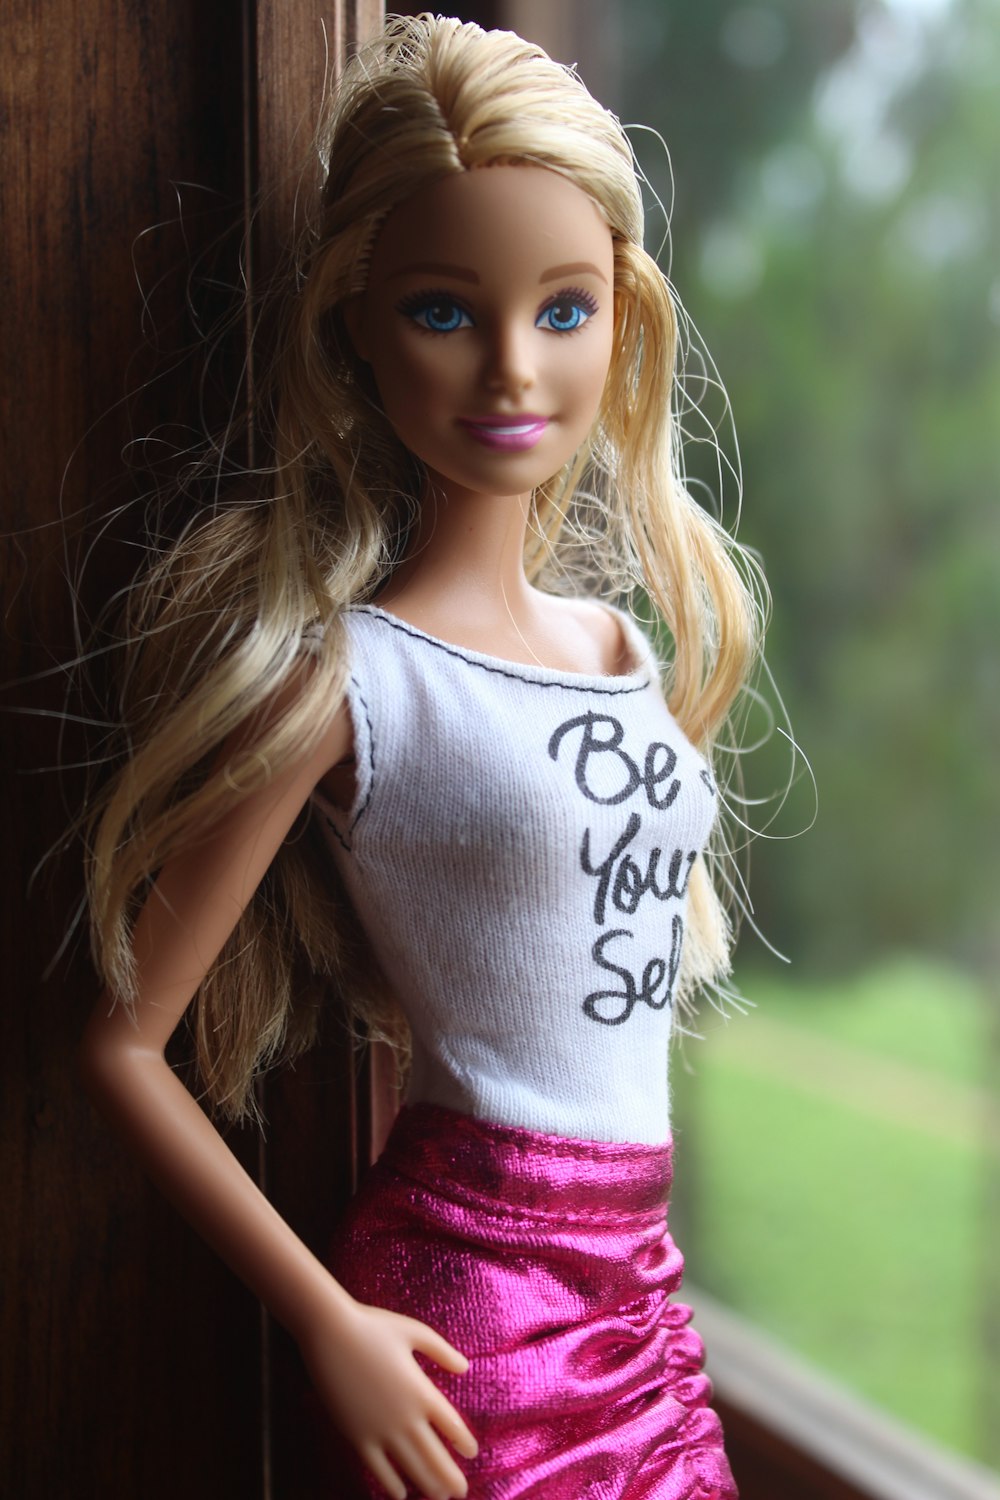 Blonde-haitred barbie doll photo photo – Free Toy Image on Unsplash